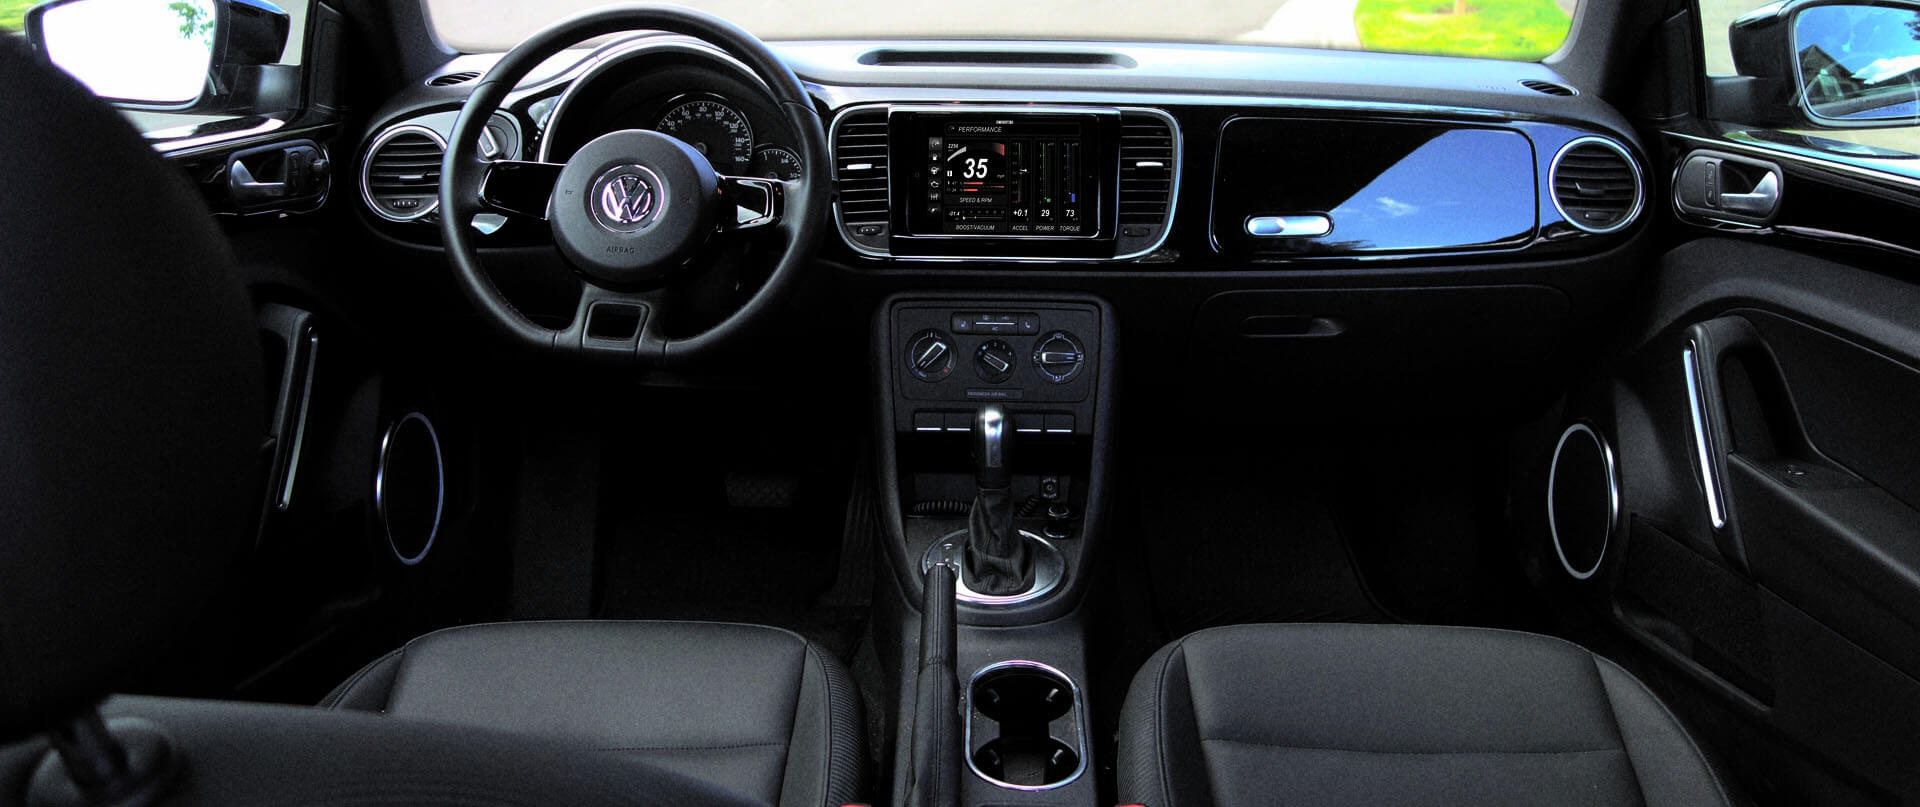 Volkswagen Cabrio dash kit